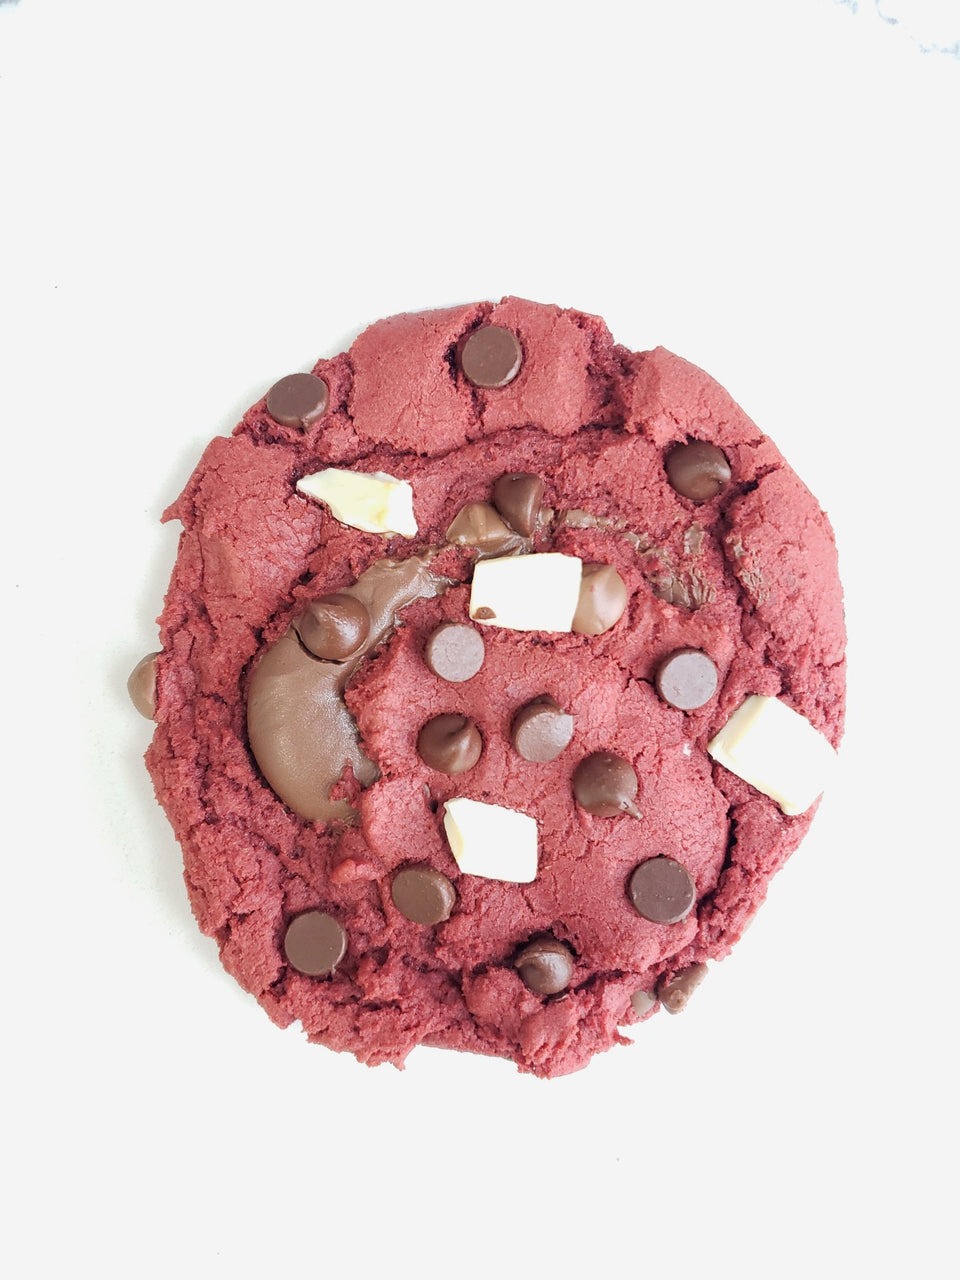 Red Velvet Nutella Cookies